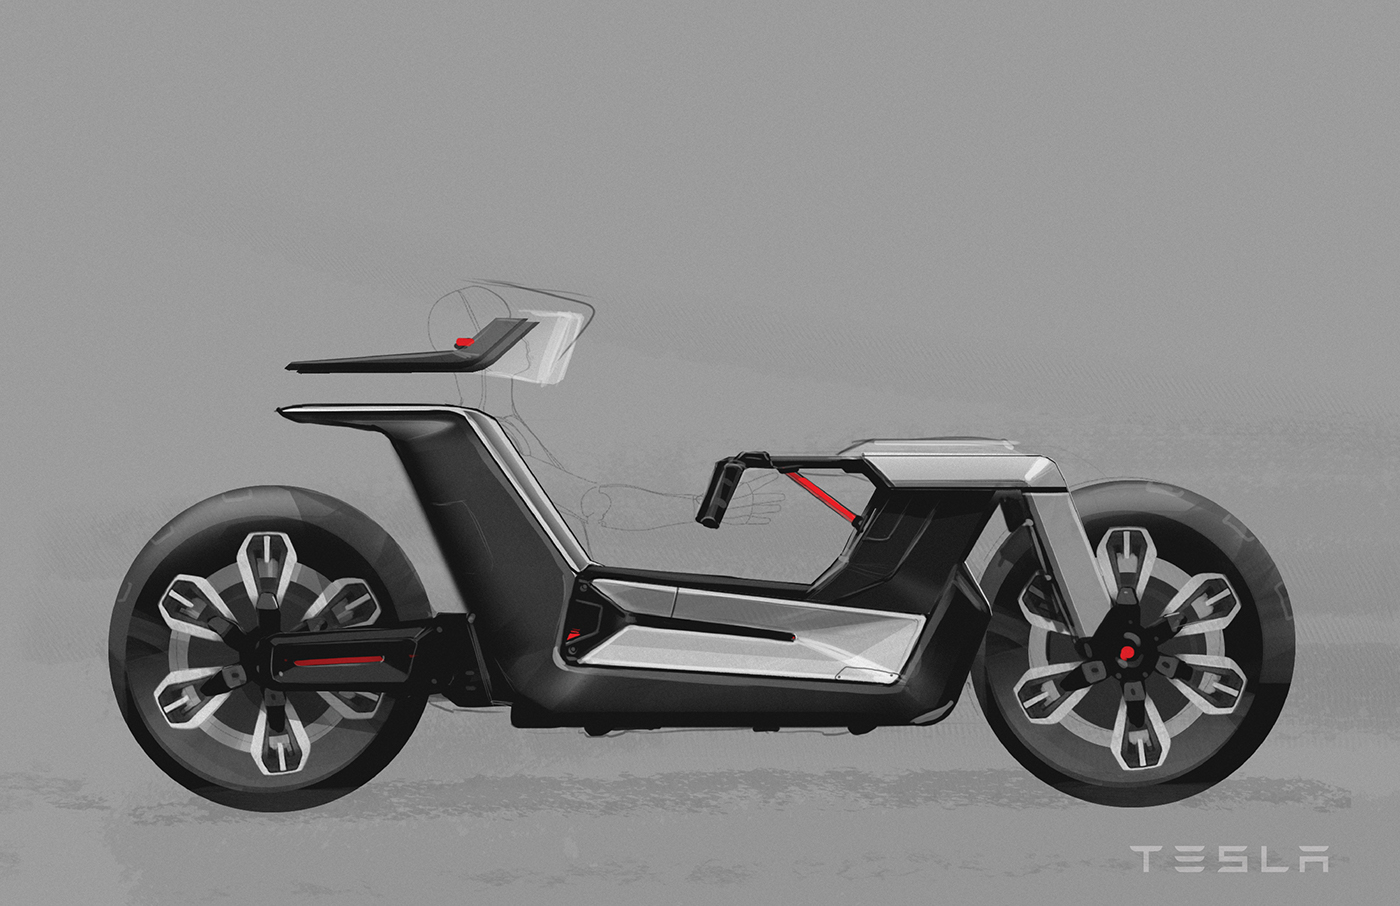 industrialdesign automotivedesign tesla transportationdesign motorcycle sketch doodle electric degree design